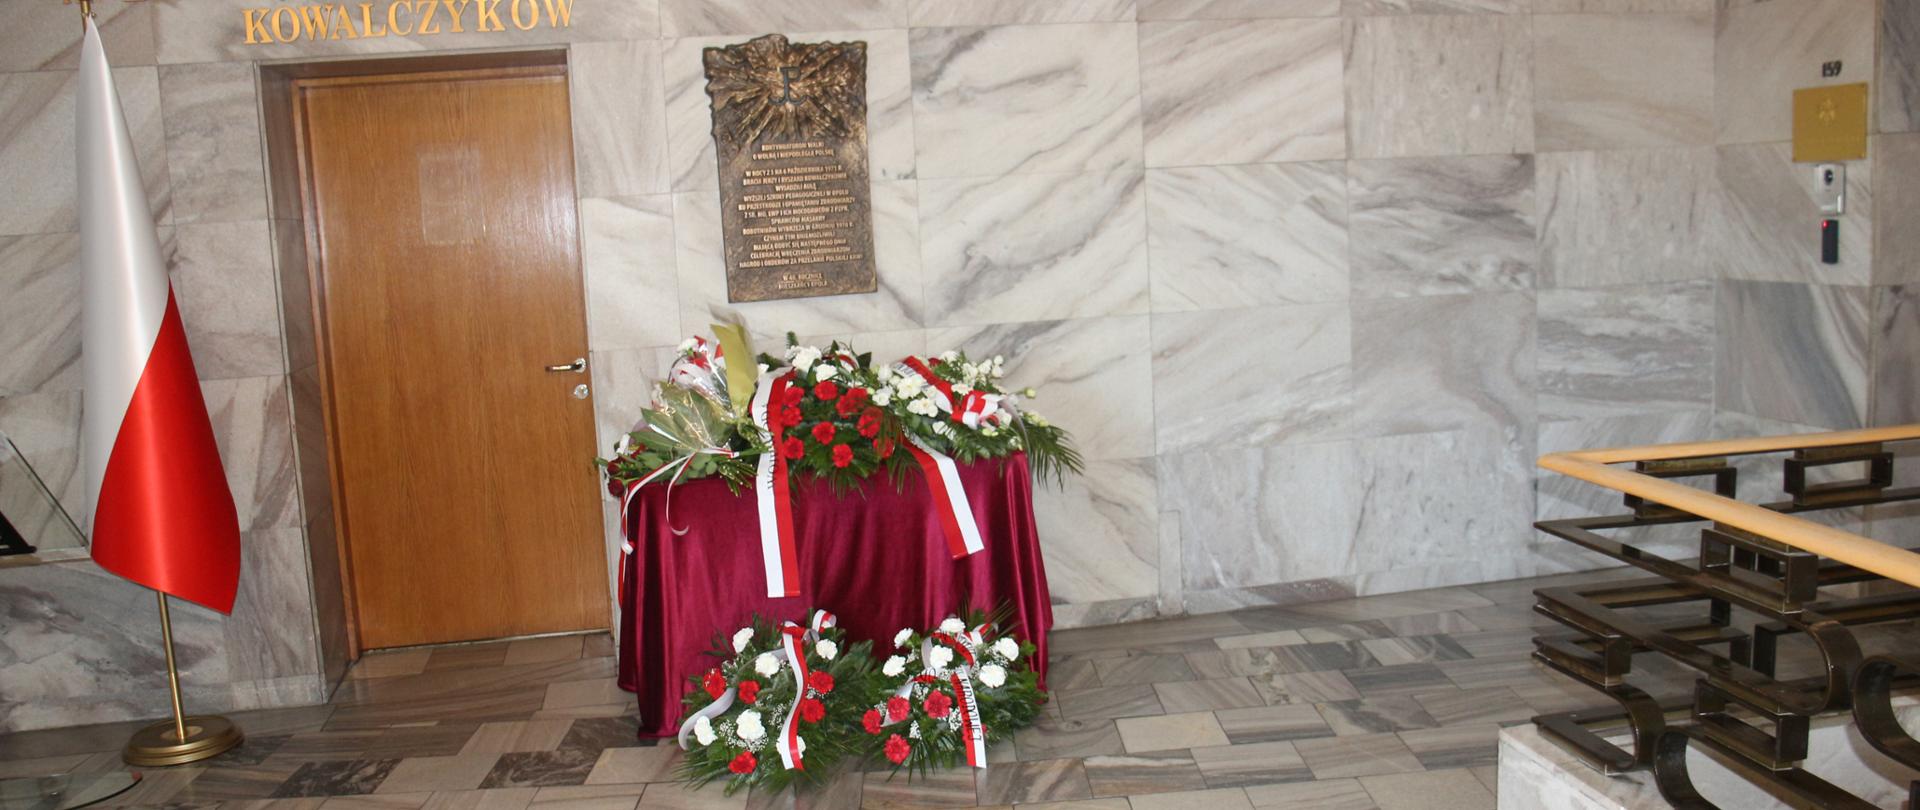 Po lewej stronie polska flaga, dalej brązowe drzwi, nad nimi napis ""Sala braci Jerzego i Ryszarda Kowalczyków". Obok na ścianie bazowa tablica pamiątkowa pod nią złożone kwiaty.